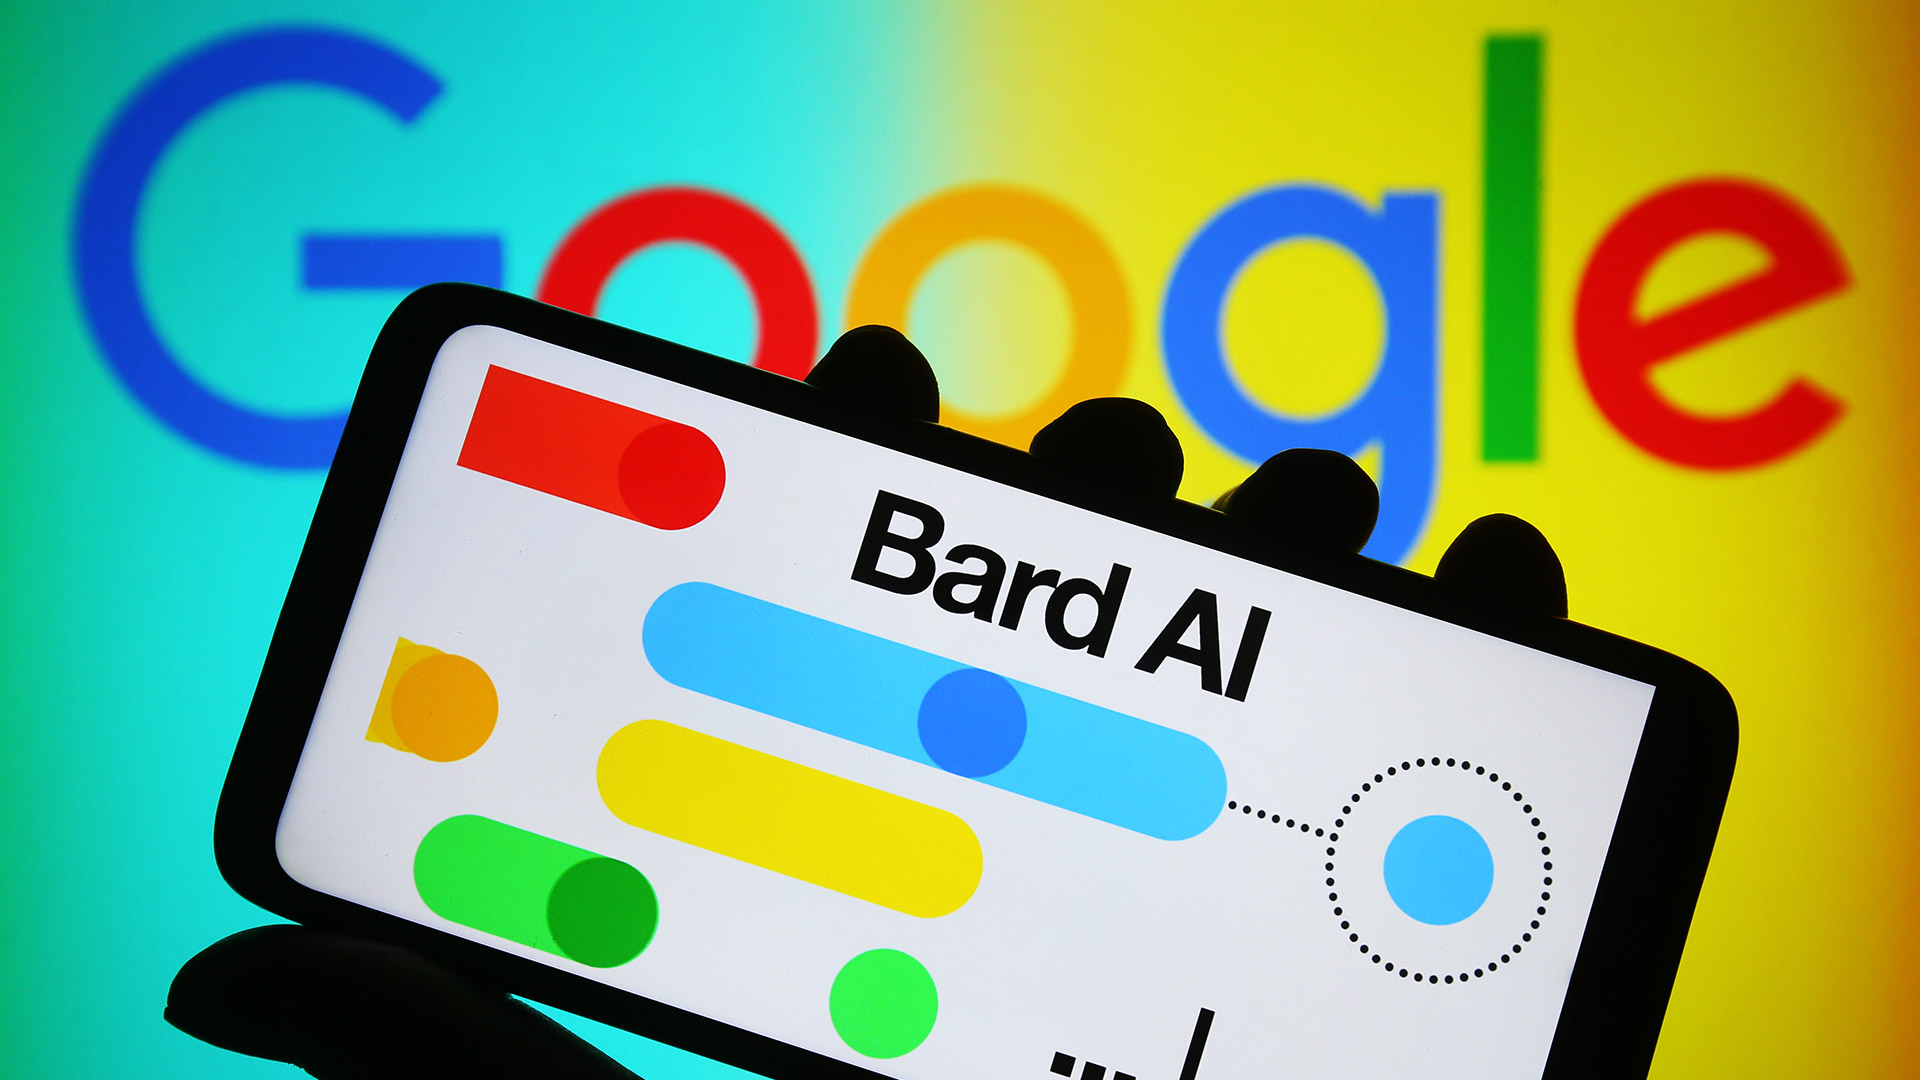 Google Bard стал намного умнее: вот 7 больших обновлений